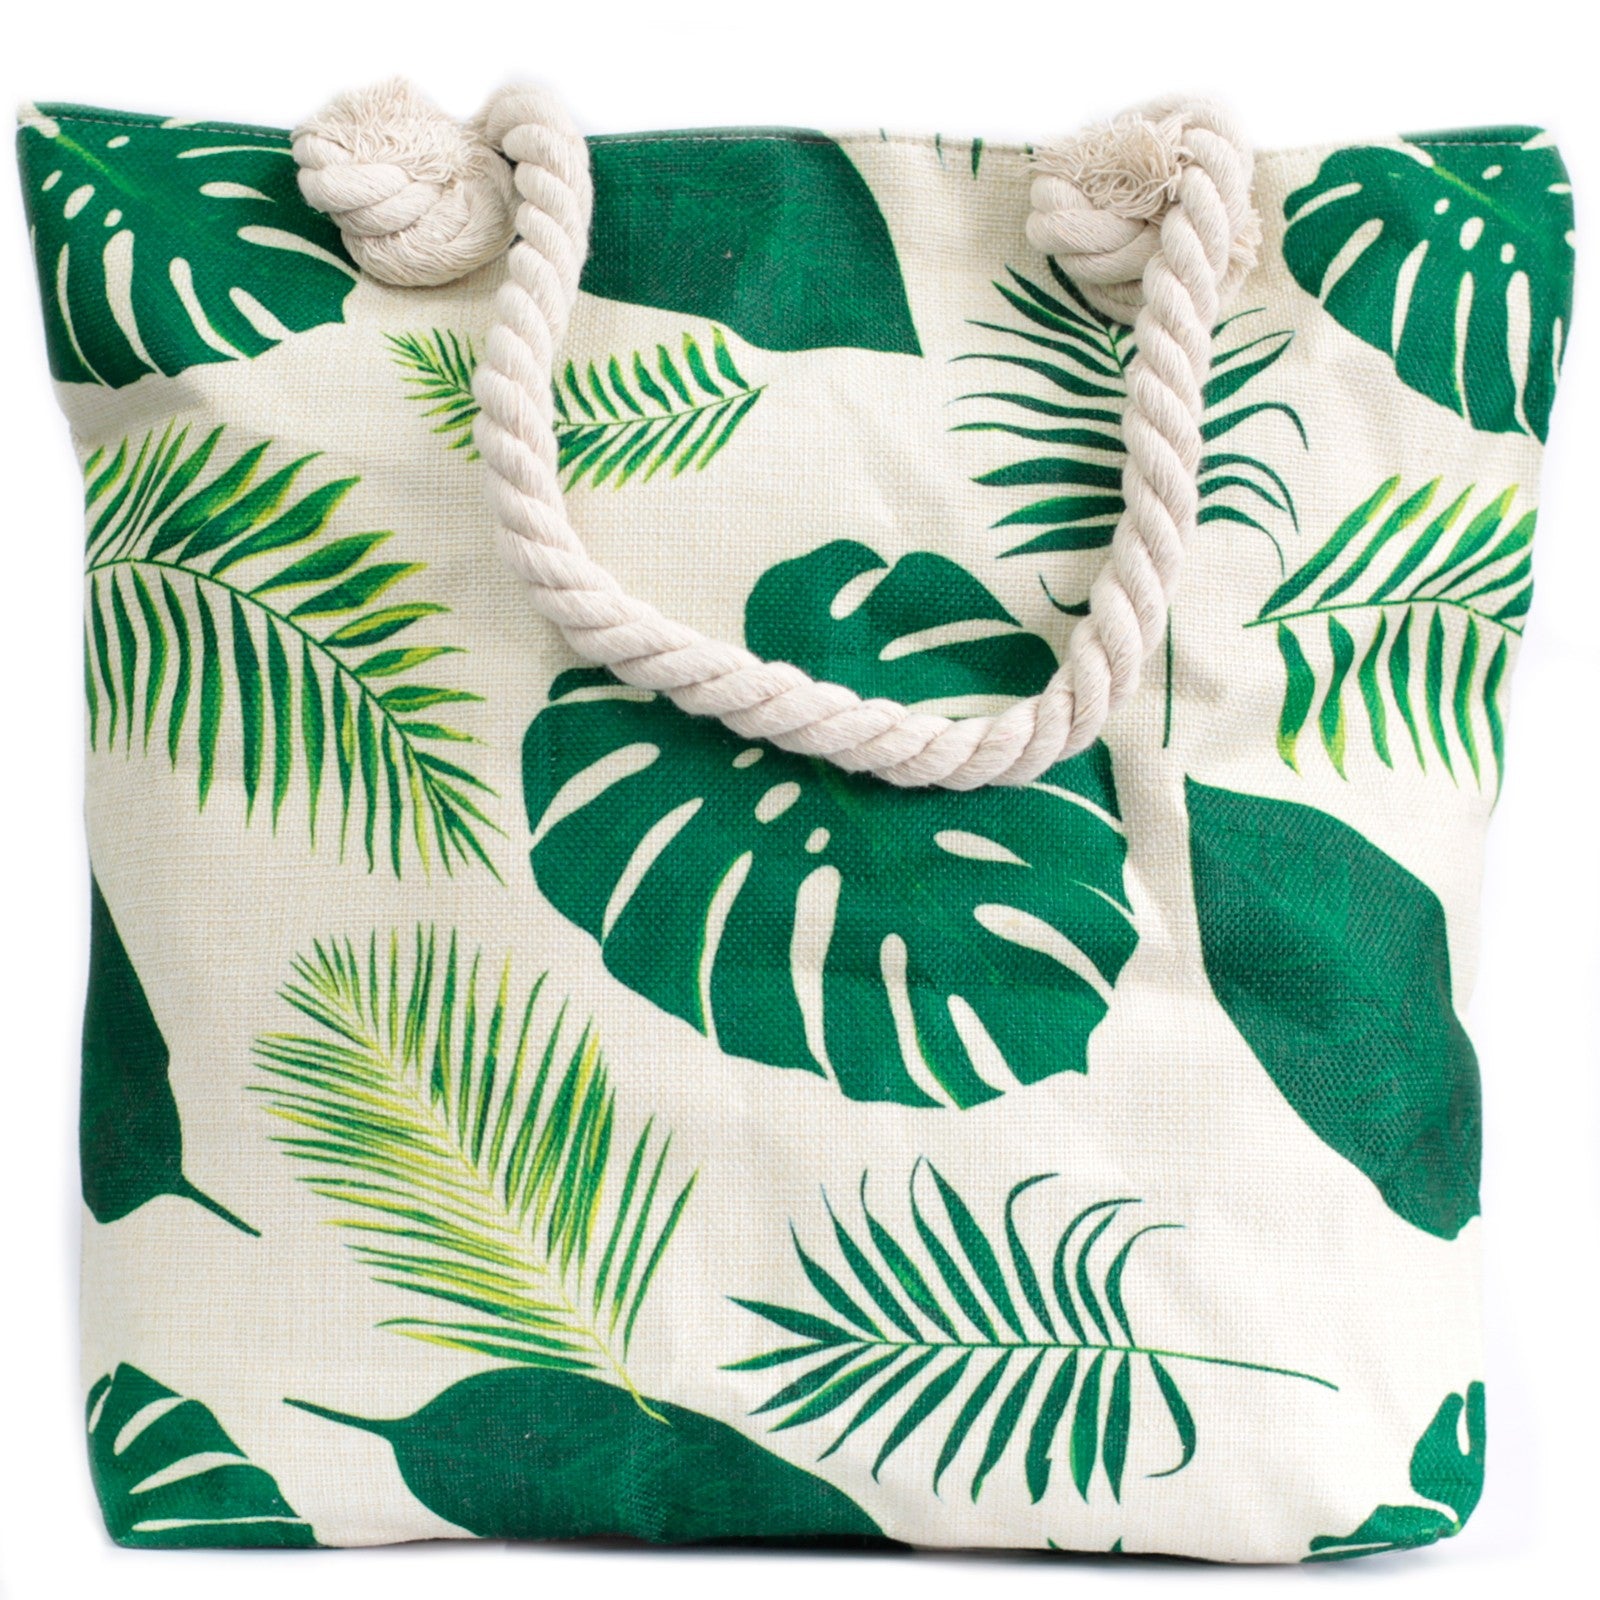 Rope Handle Bag - Tropical Green